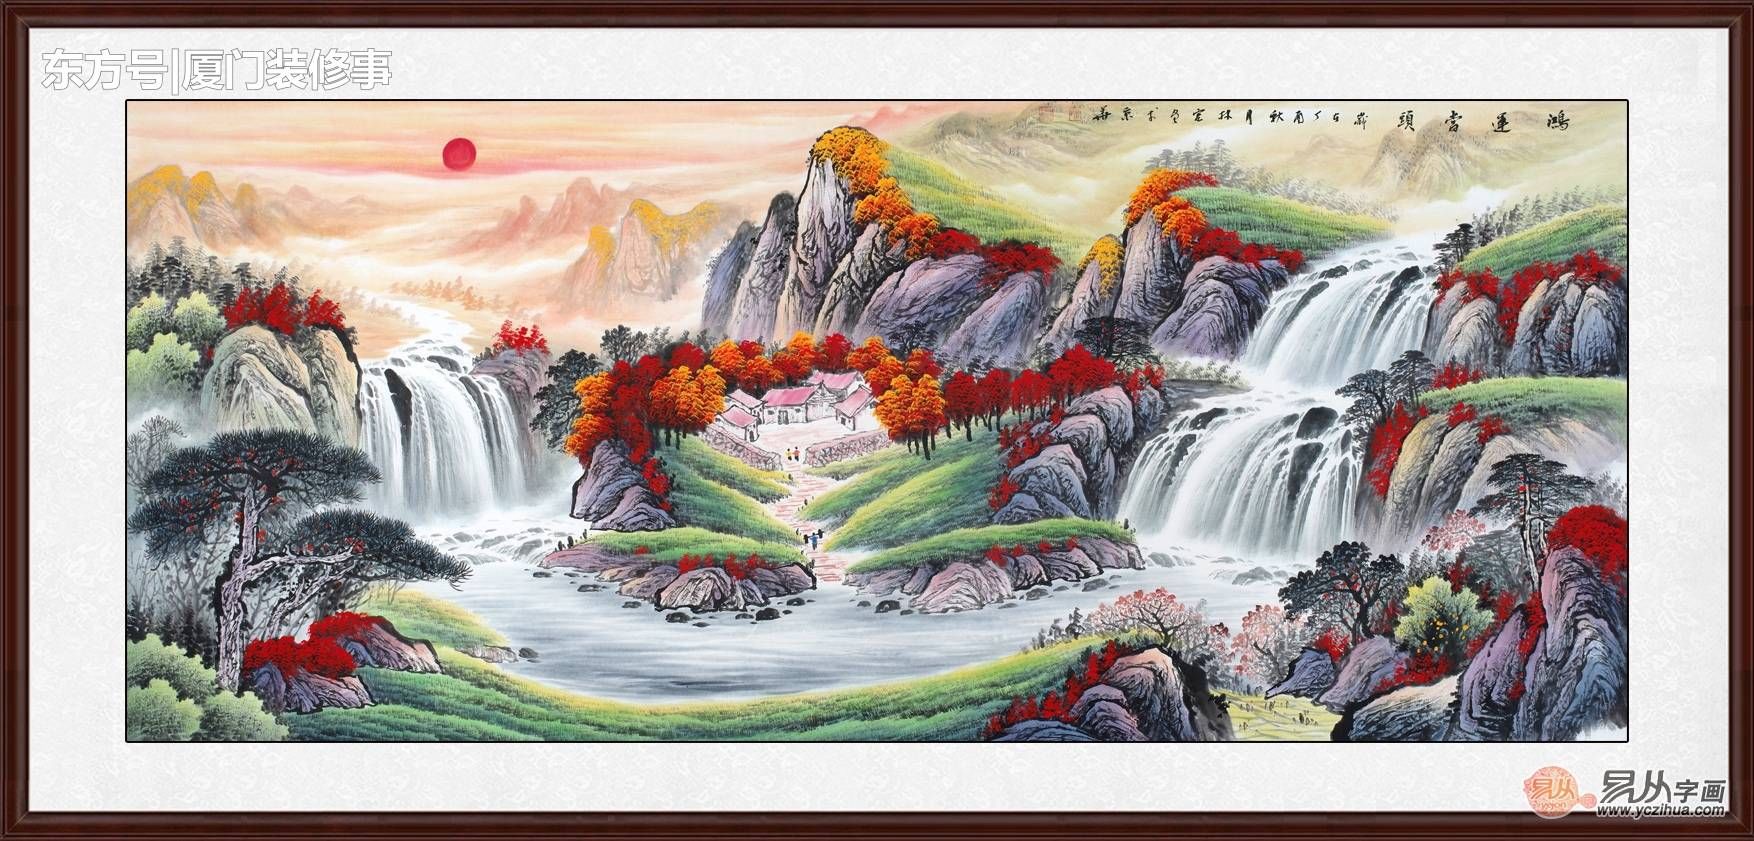 吴大恺这幅山水画就是这样的格局,俗话说:山环水抱,人才辈出,八方来财